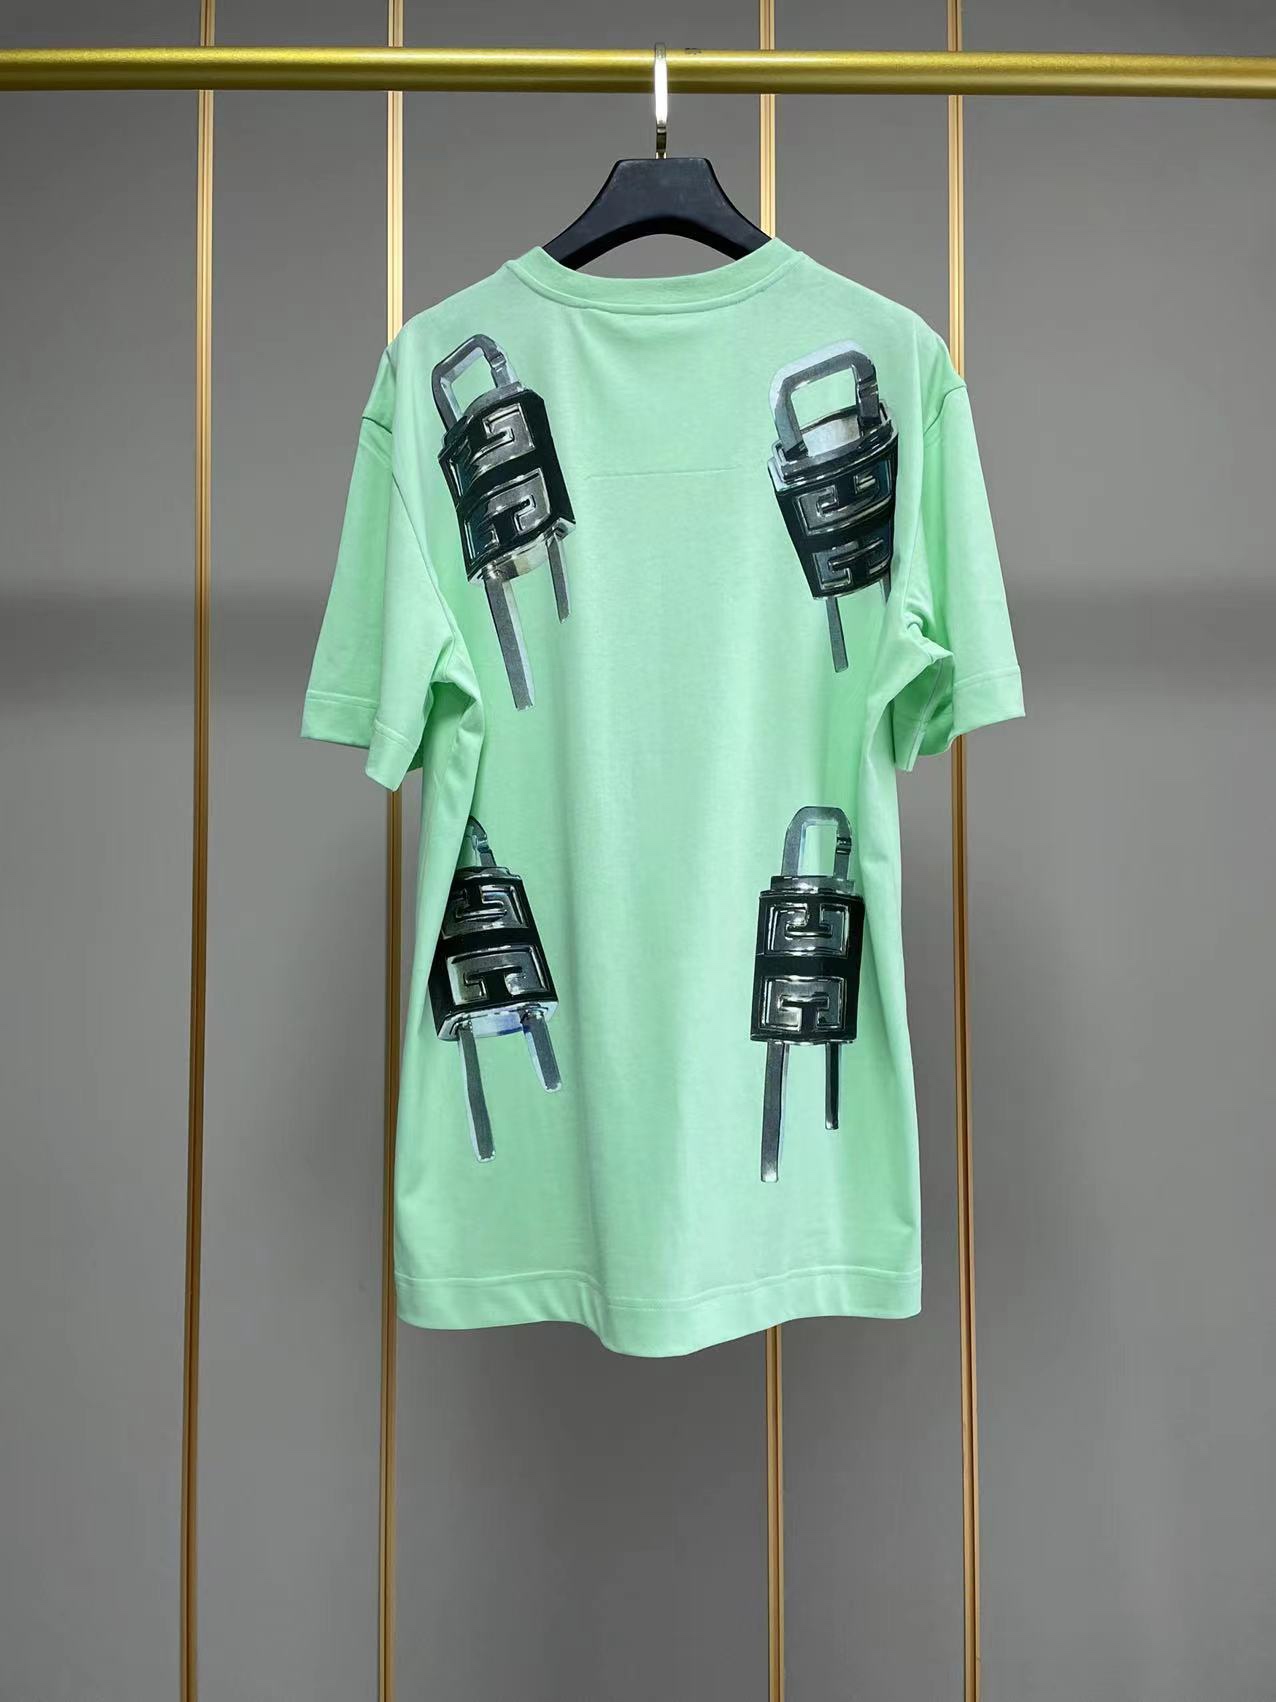 ジバンシィtシャツ激安通販 純綿 短袖 トップス ファッション ロックプリント 柔らかい 大販売 2色可選 グリーン_2